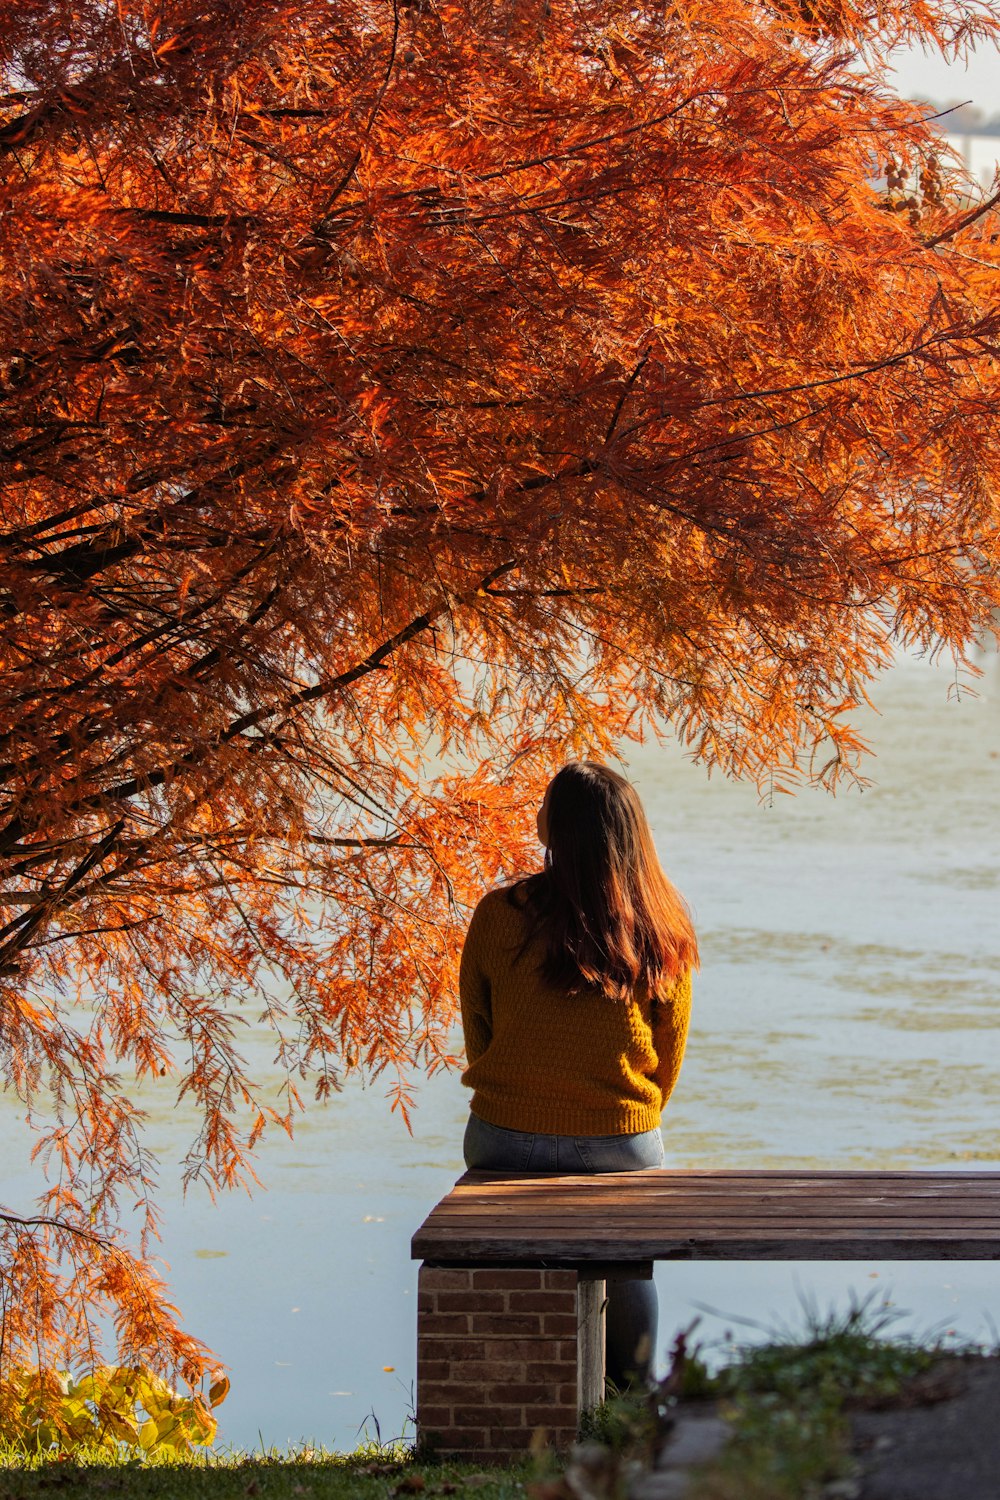 uma pessoa sentada em um banco olhando para uma árvore com folhas alaranjadas